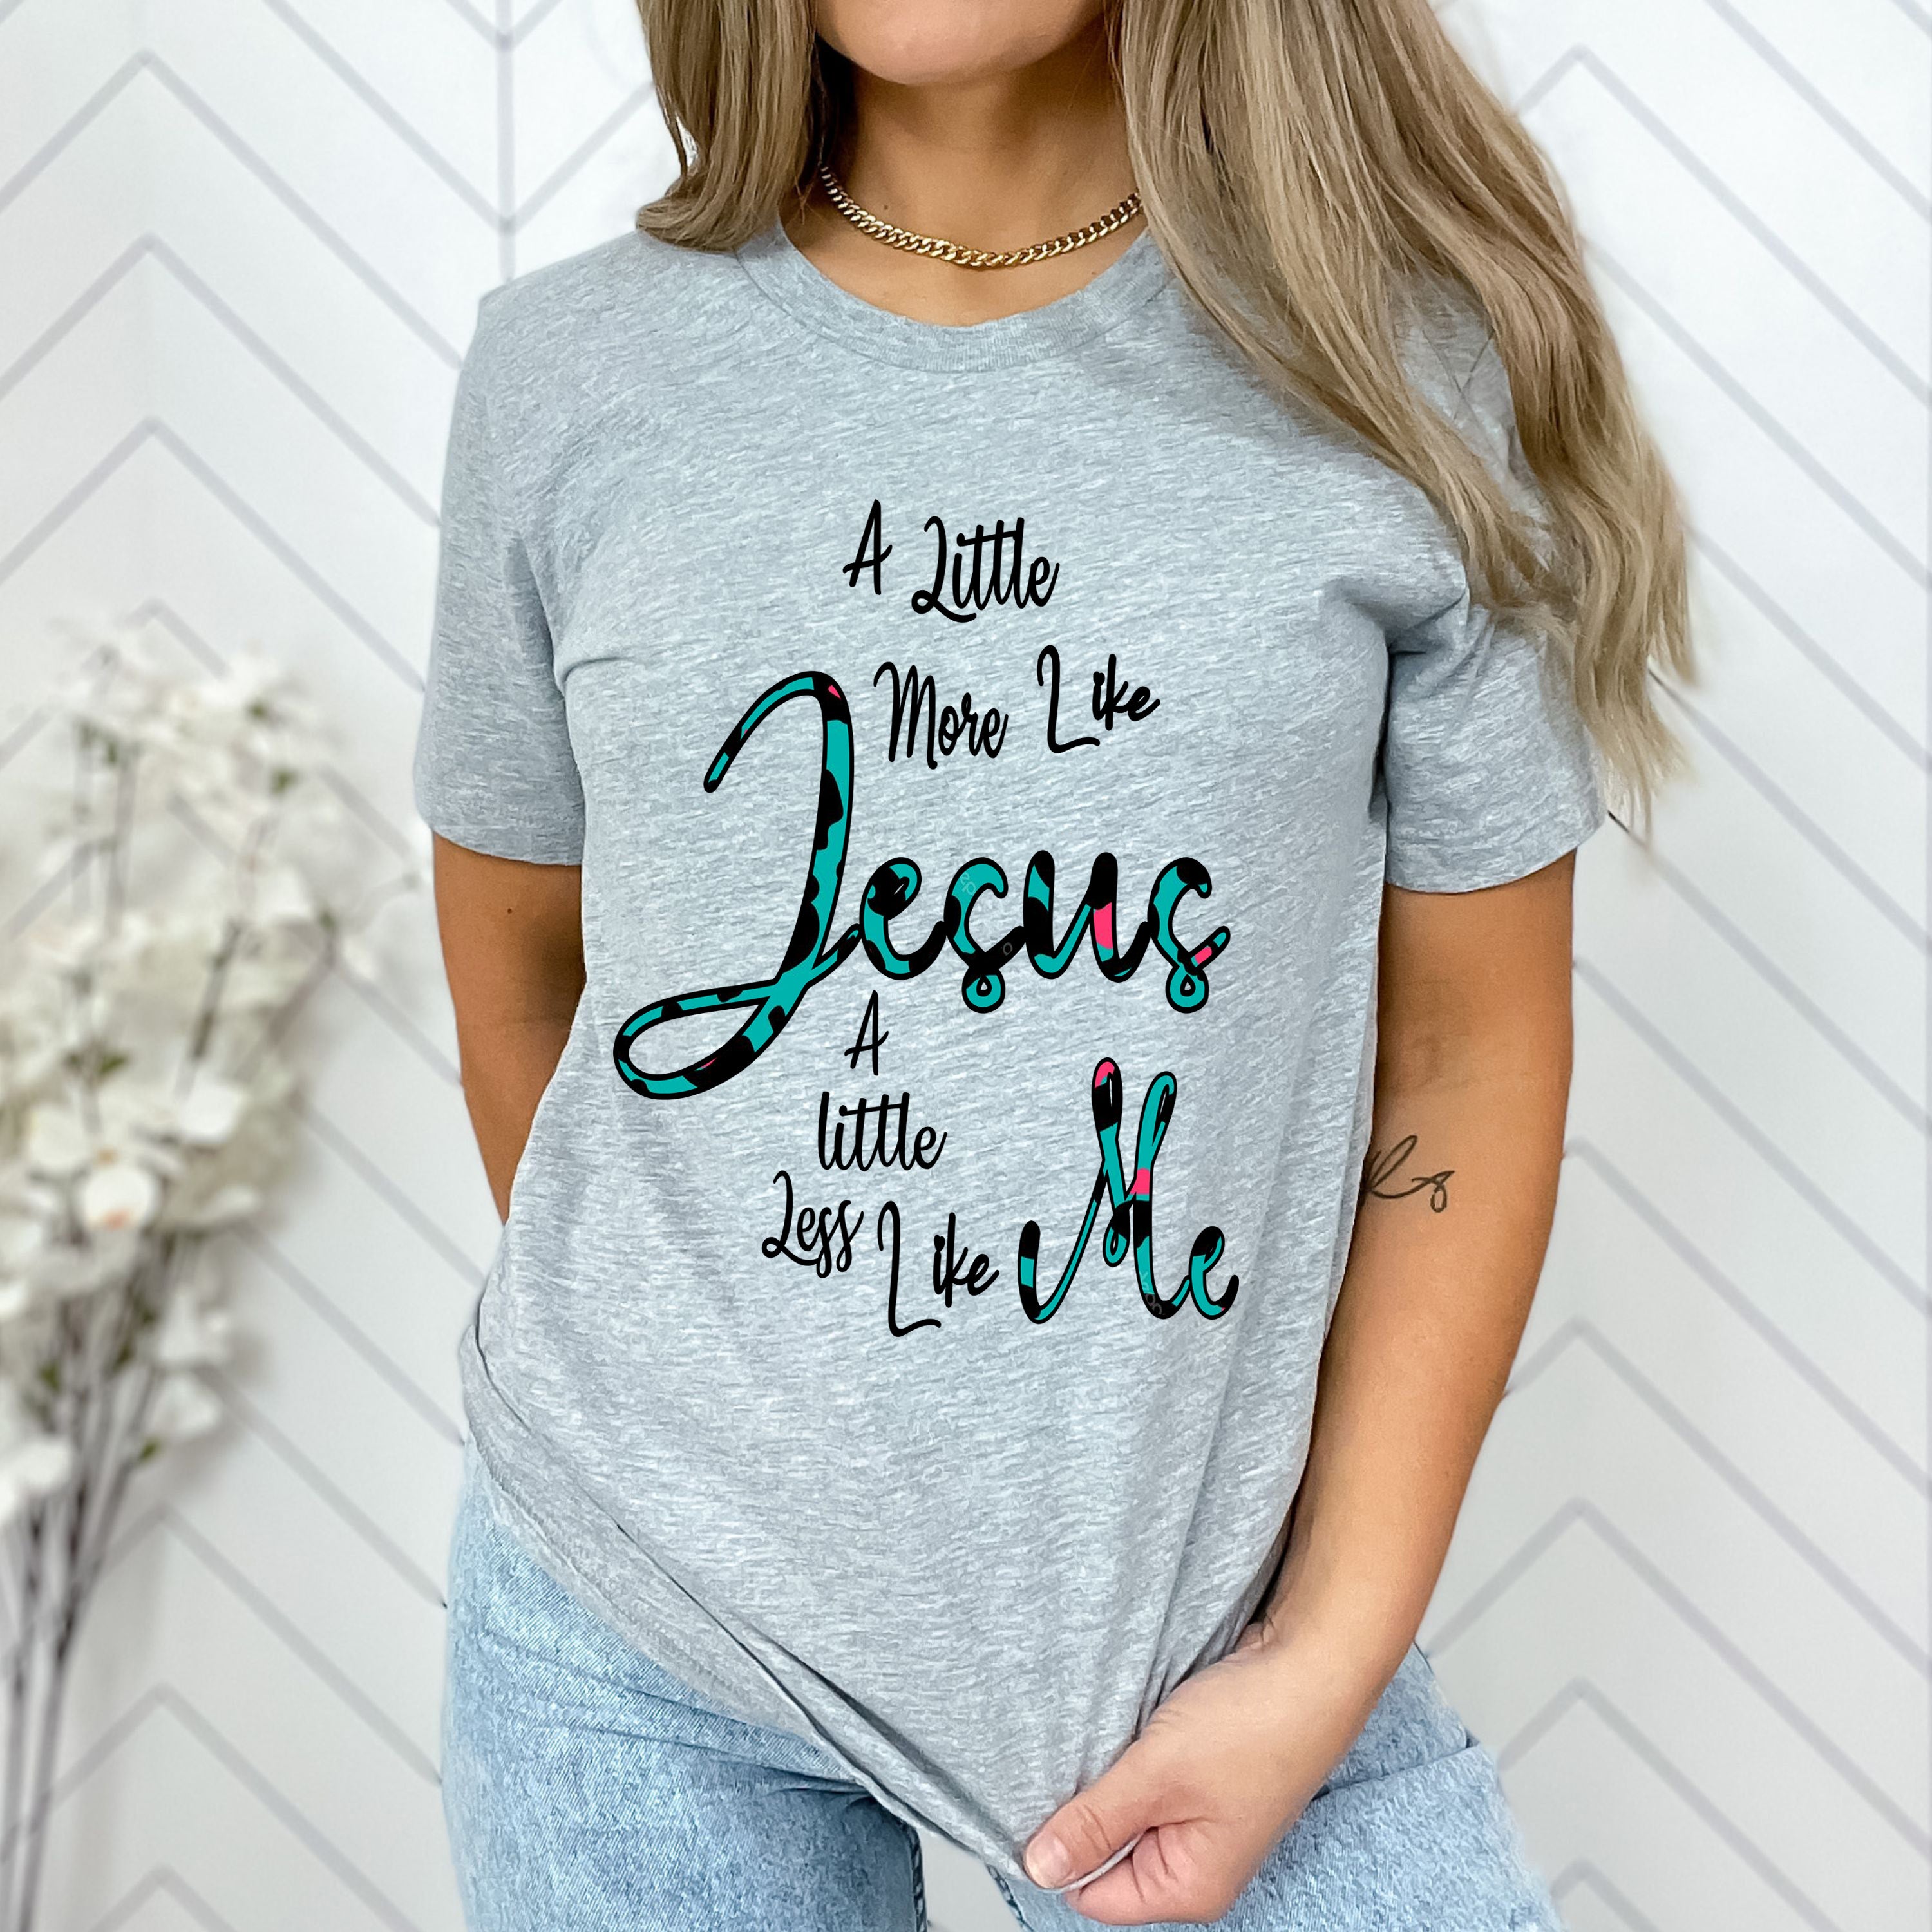 "A Little more like Jesus"